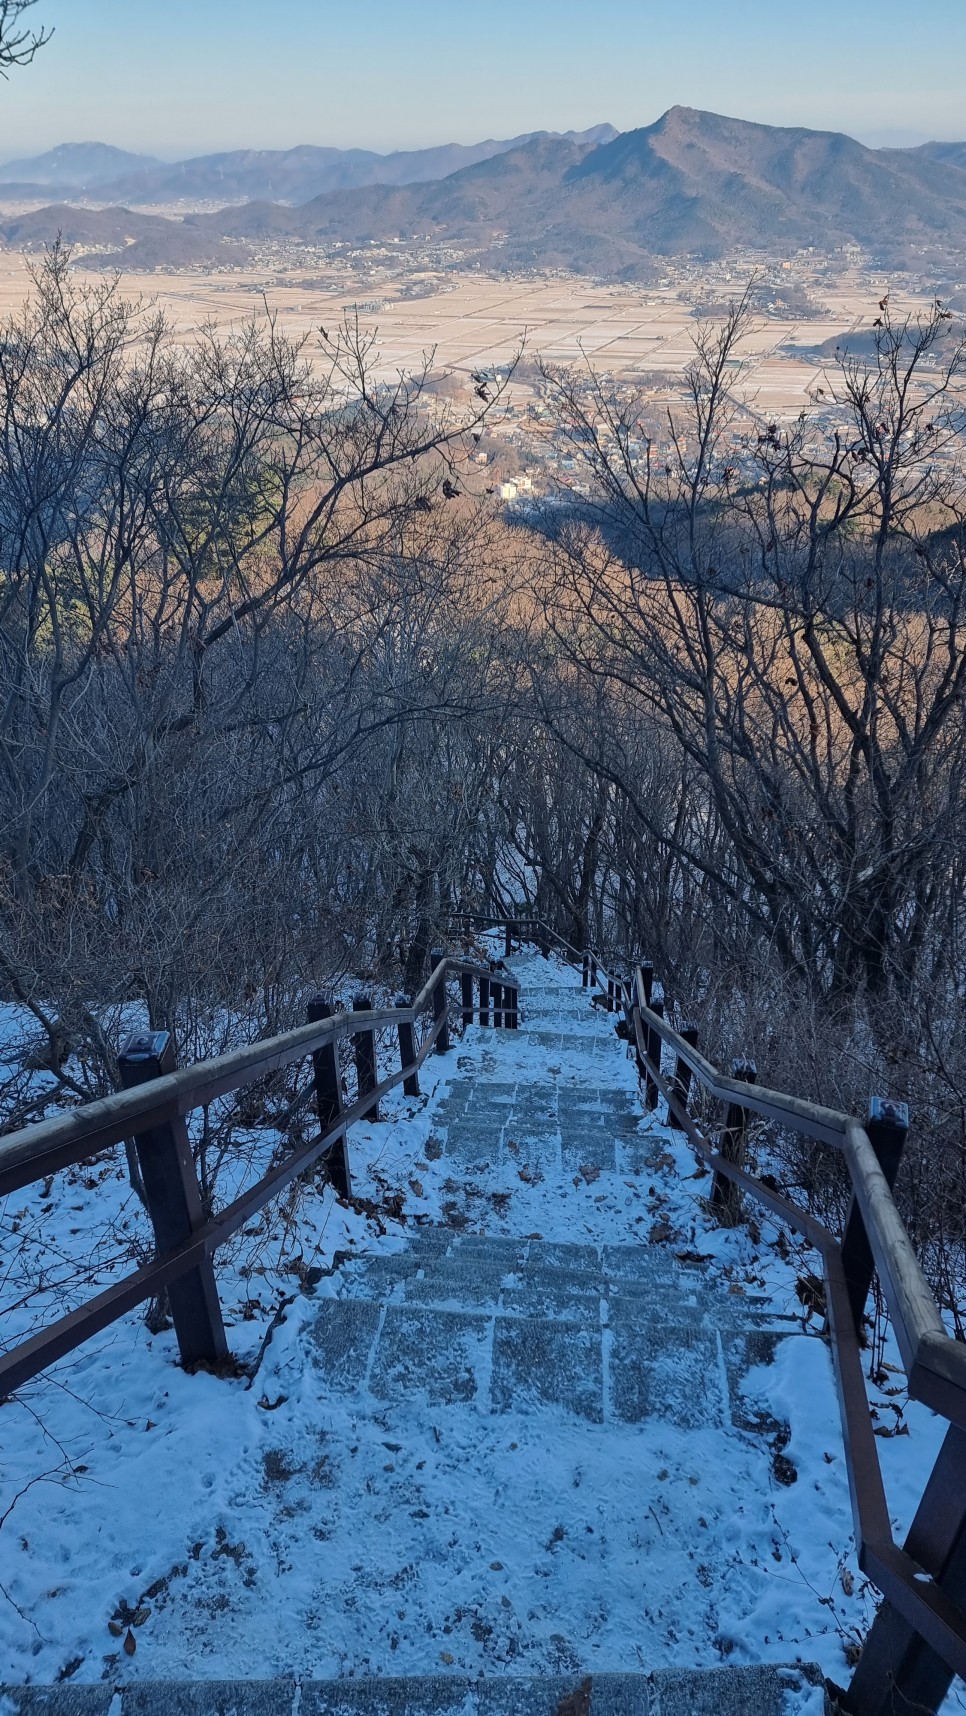 마니산 등산, 참성단 원점회귀 산행코스 산행 (계단로 ~ 단군로)